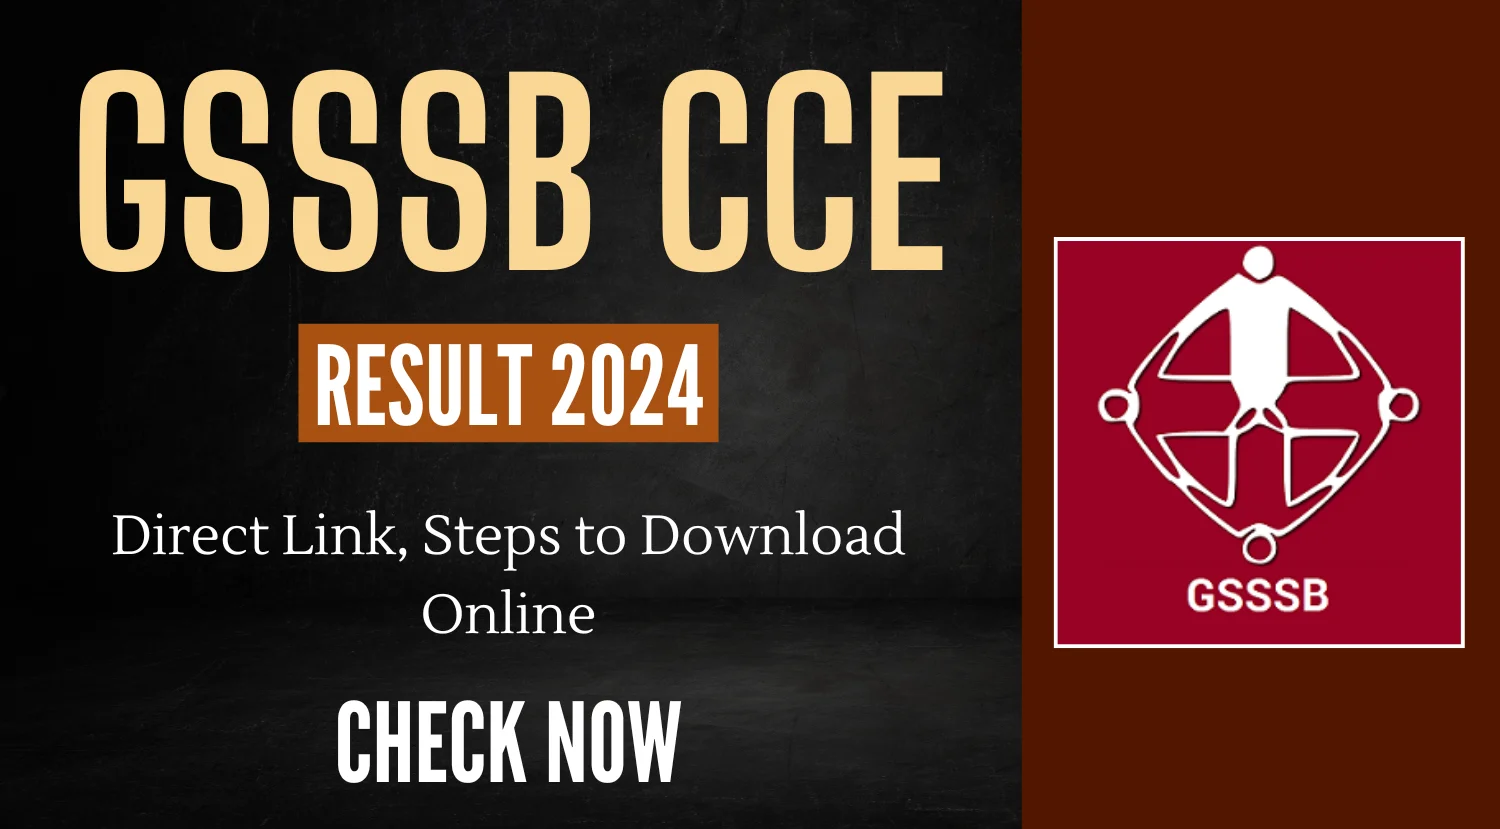 GSSSB CCE Result 2024 Direct Link Steps to Download Online 1